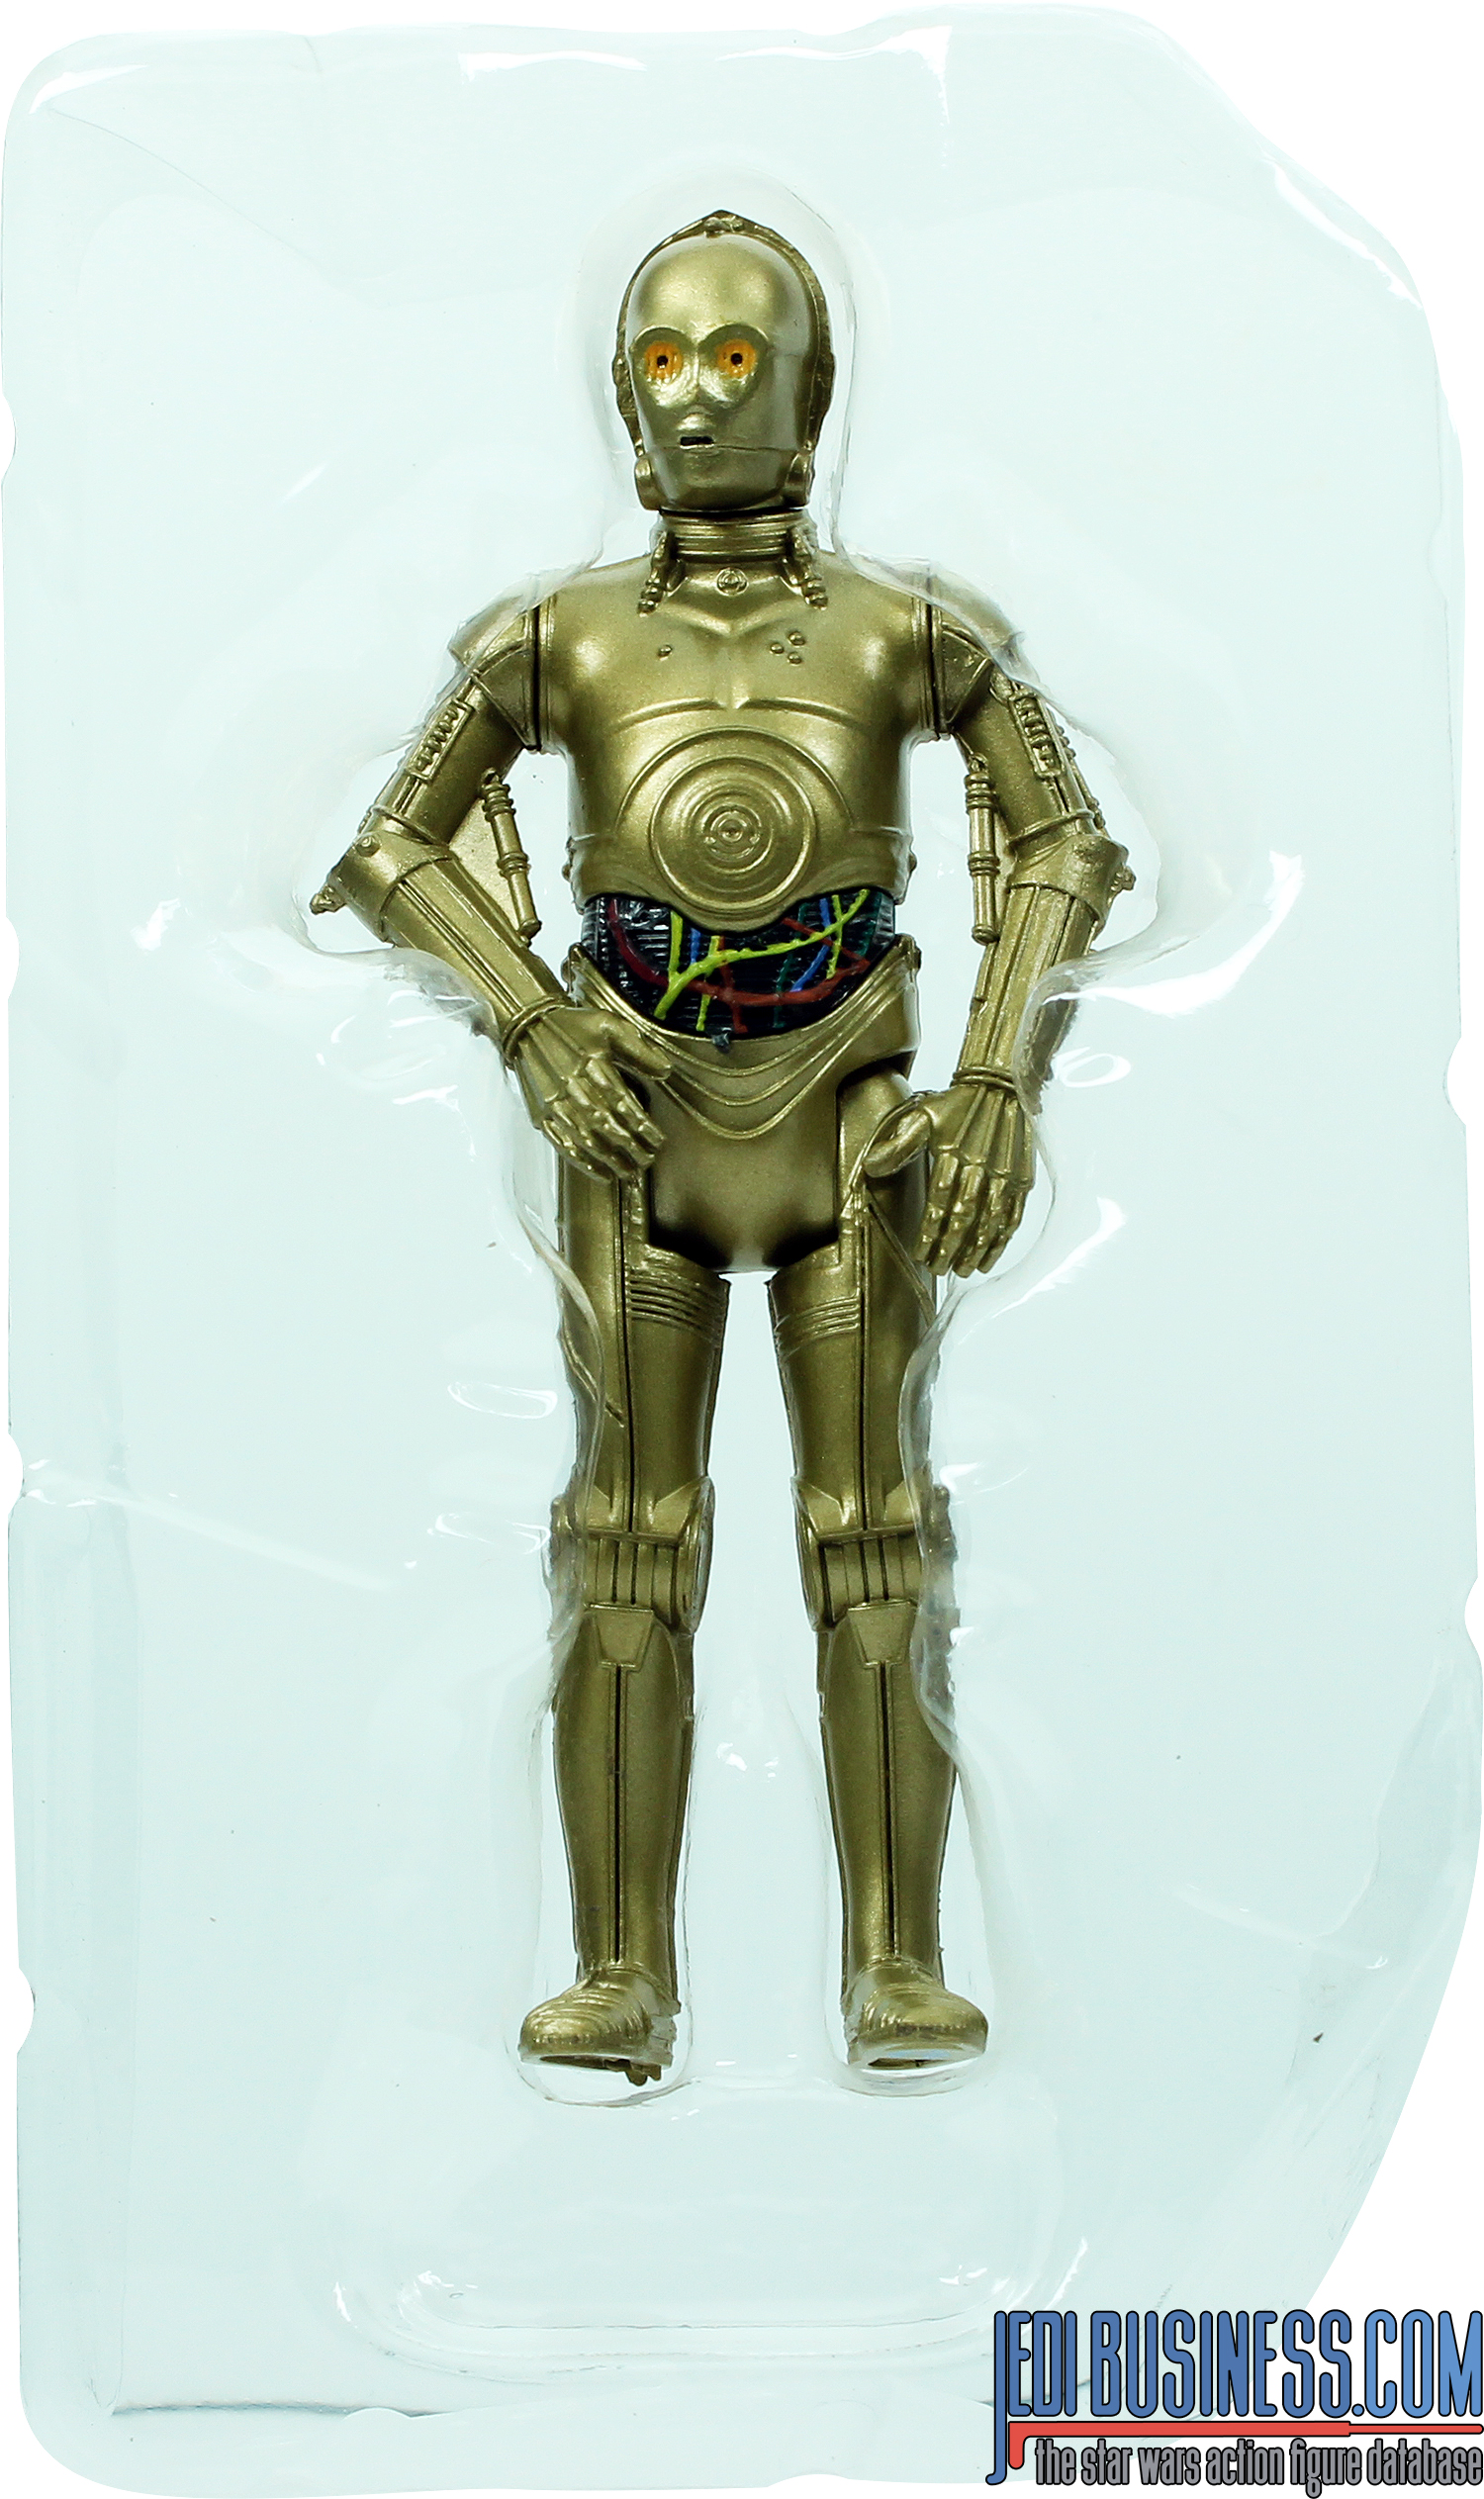 C-3PO The Last Jedi